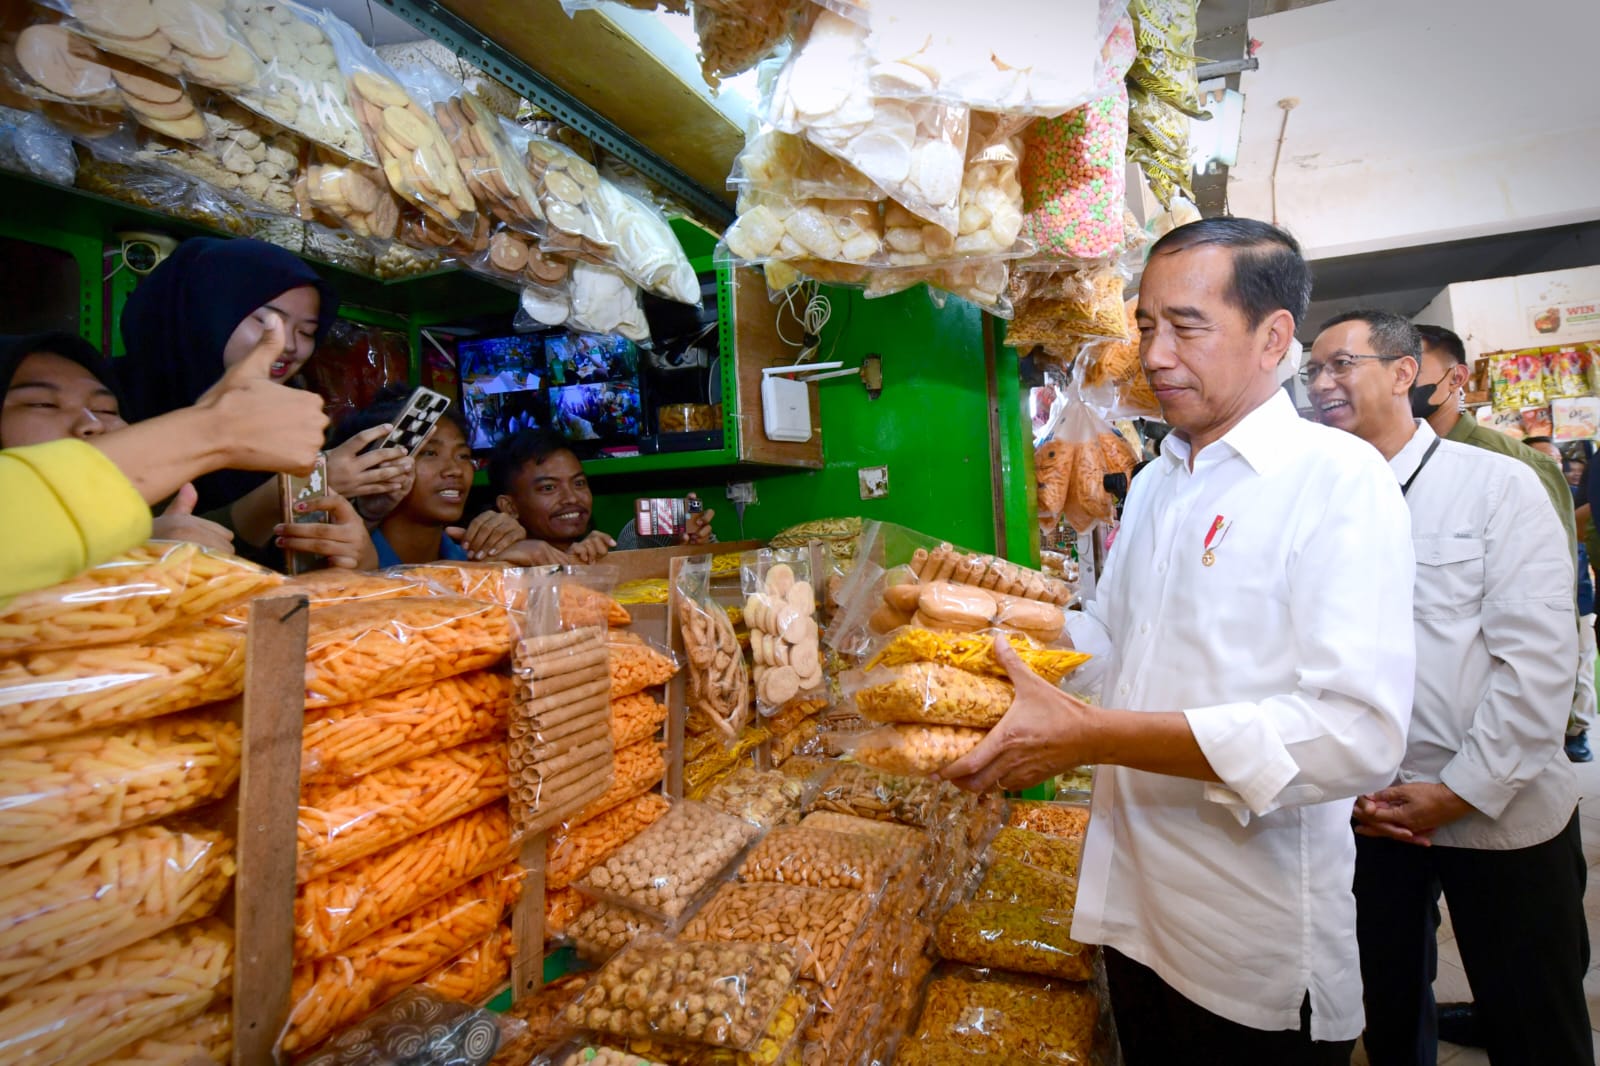 Jelang Lebaran, Presiden Jokowi Tinjau Harga Komoditas di Pasar Johar Baru